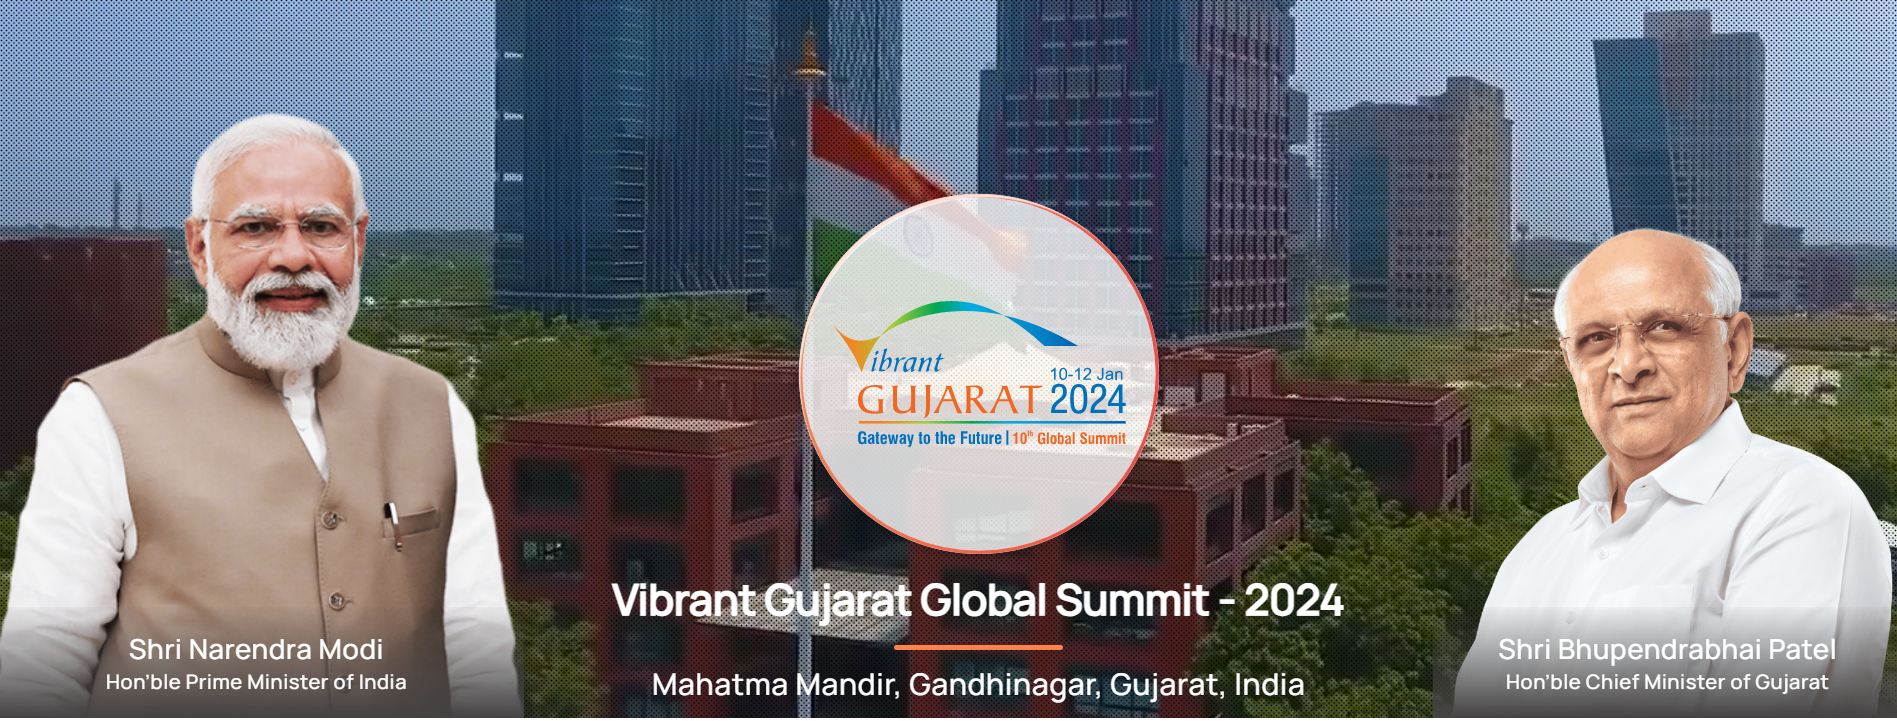 Highlights of Vibrant Gujarat 2024